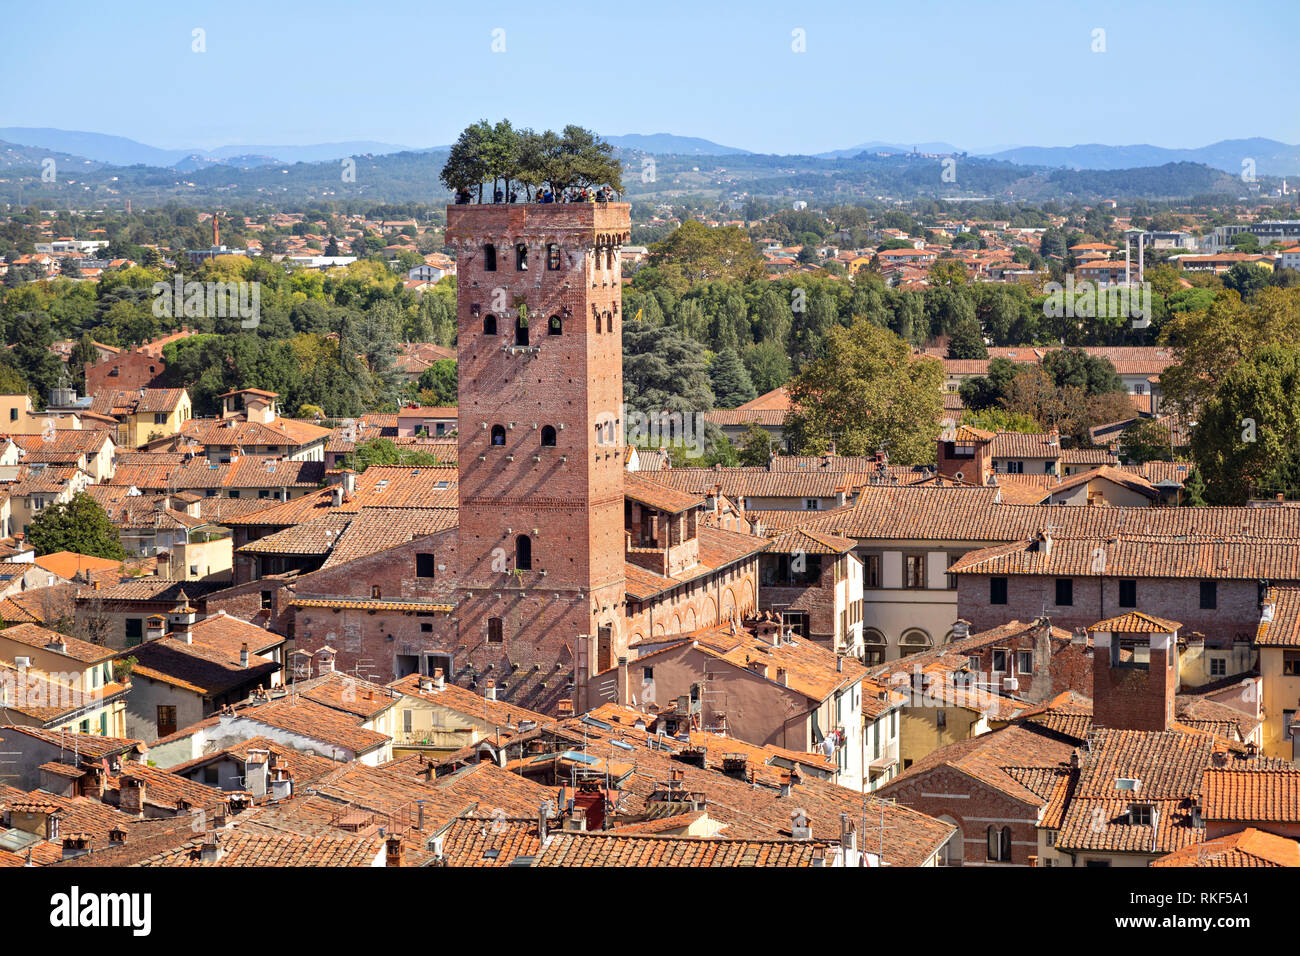 Lucca, Italien. Torre Guinigi - Backstein Turm aus dem 14. Jahrhundert von Holm - Eichen gekrönt Stockfoto